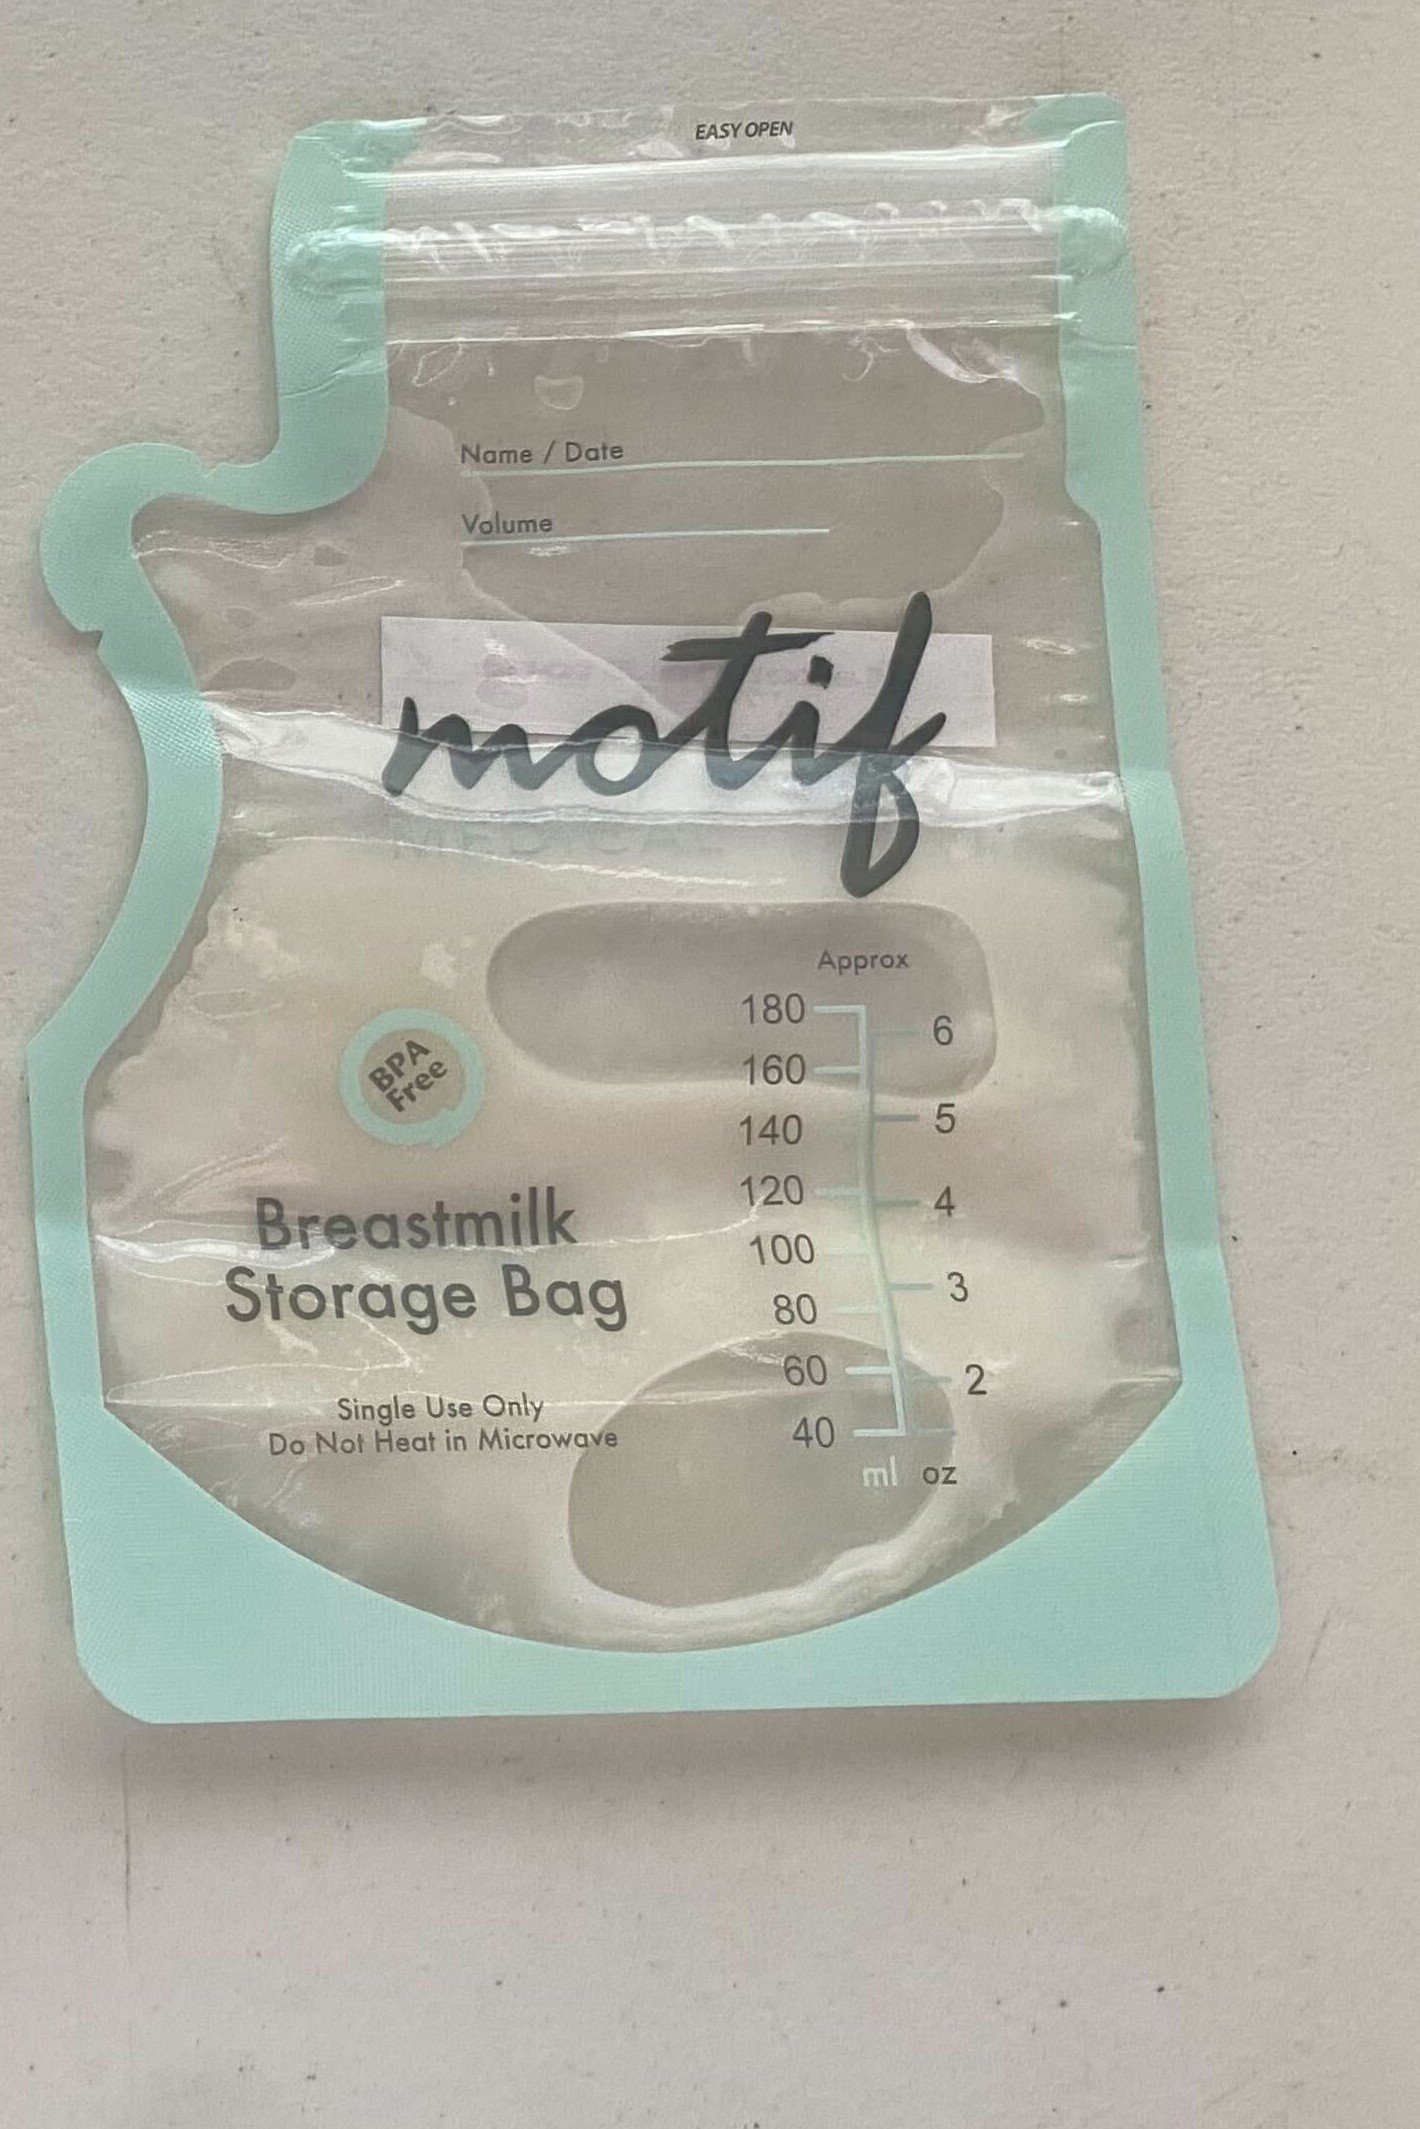 Dr. Brown's Breastmilk Storage Bags 100 Piece